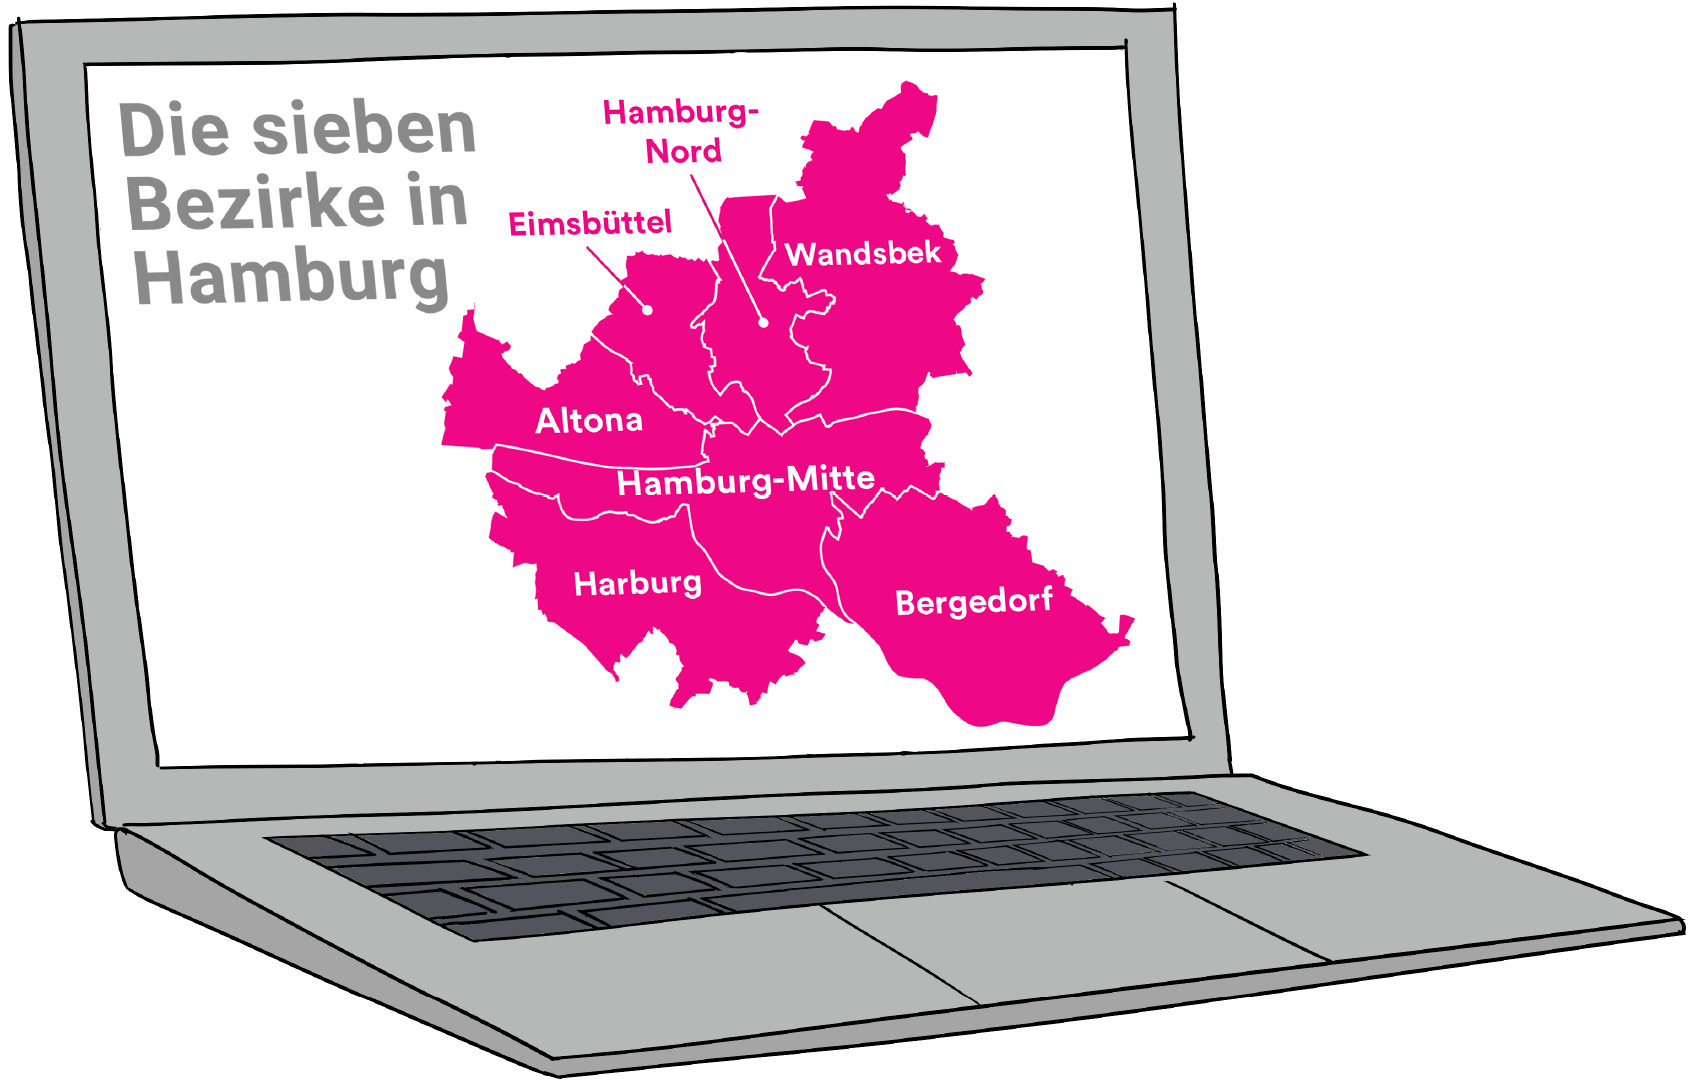 Illustration: Ein aufgeklappter Laptop. Auf dem Bildschirm sieht man die Silhouette der Freien und Hansestadt Hamburg. Die Namen und Grenzen der sieben Hamburger Bezirke sind eingezeichnet. Die Überschrift der Karte lautet „Die sieben Bezirke in Hamburg“.